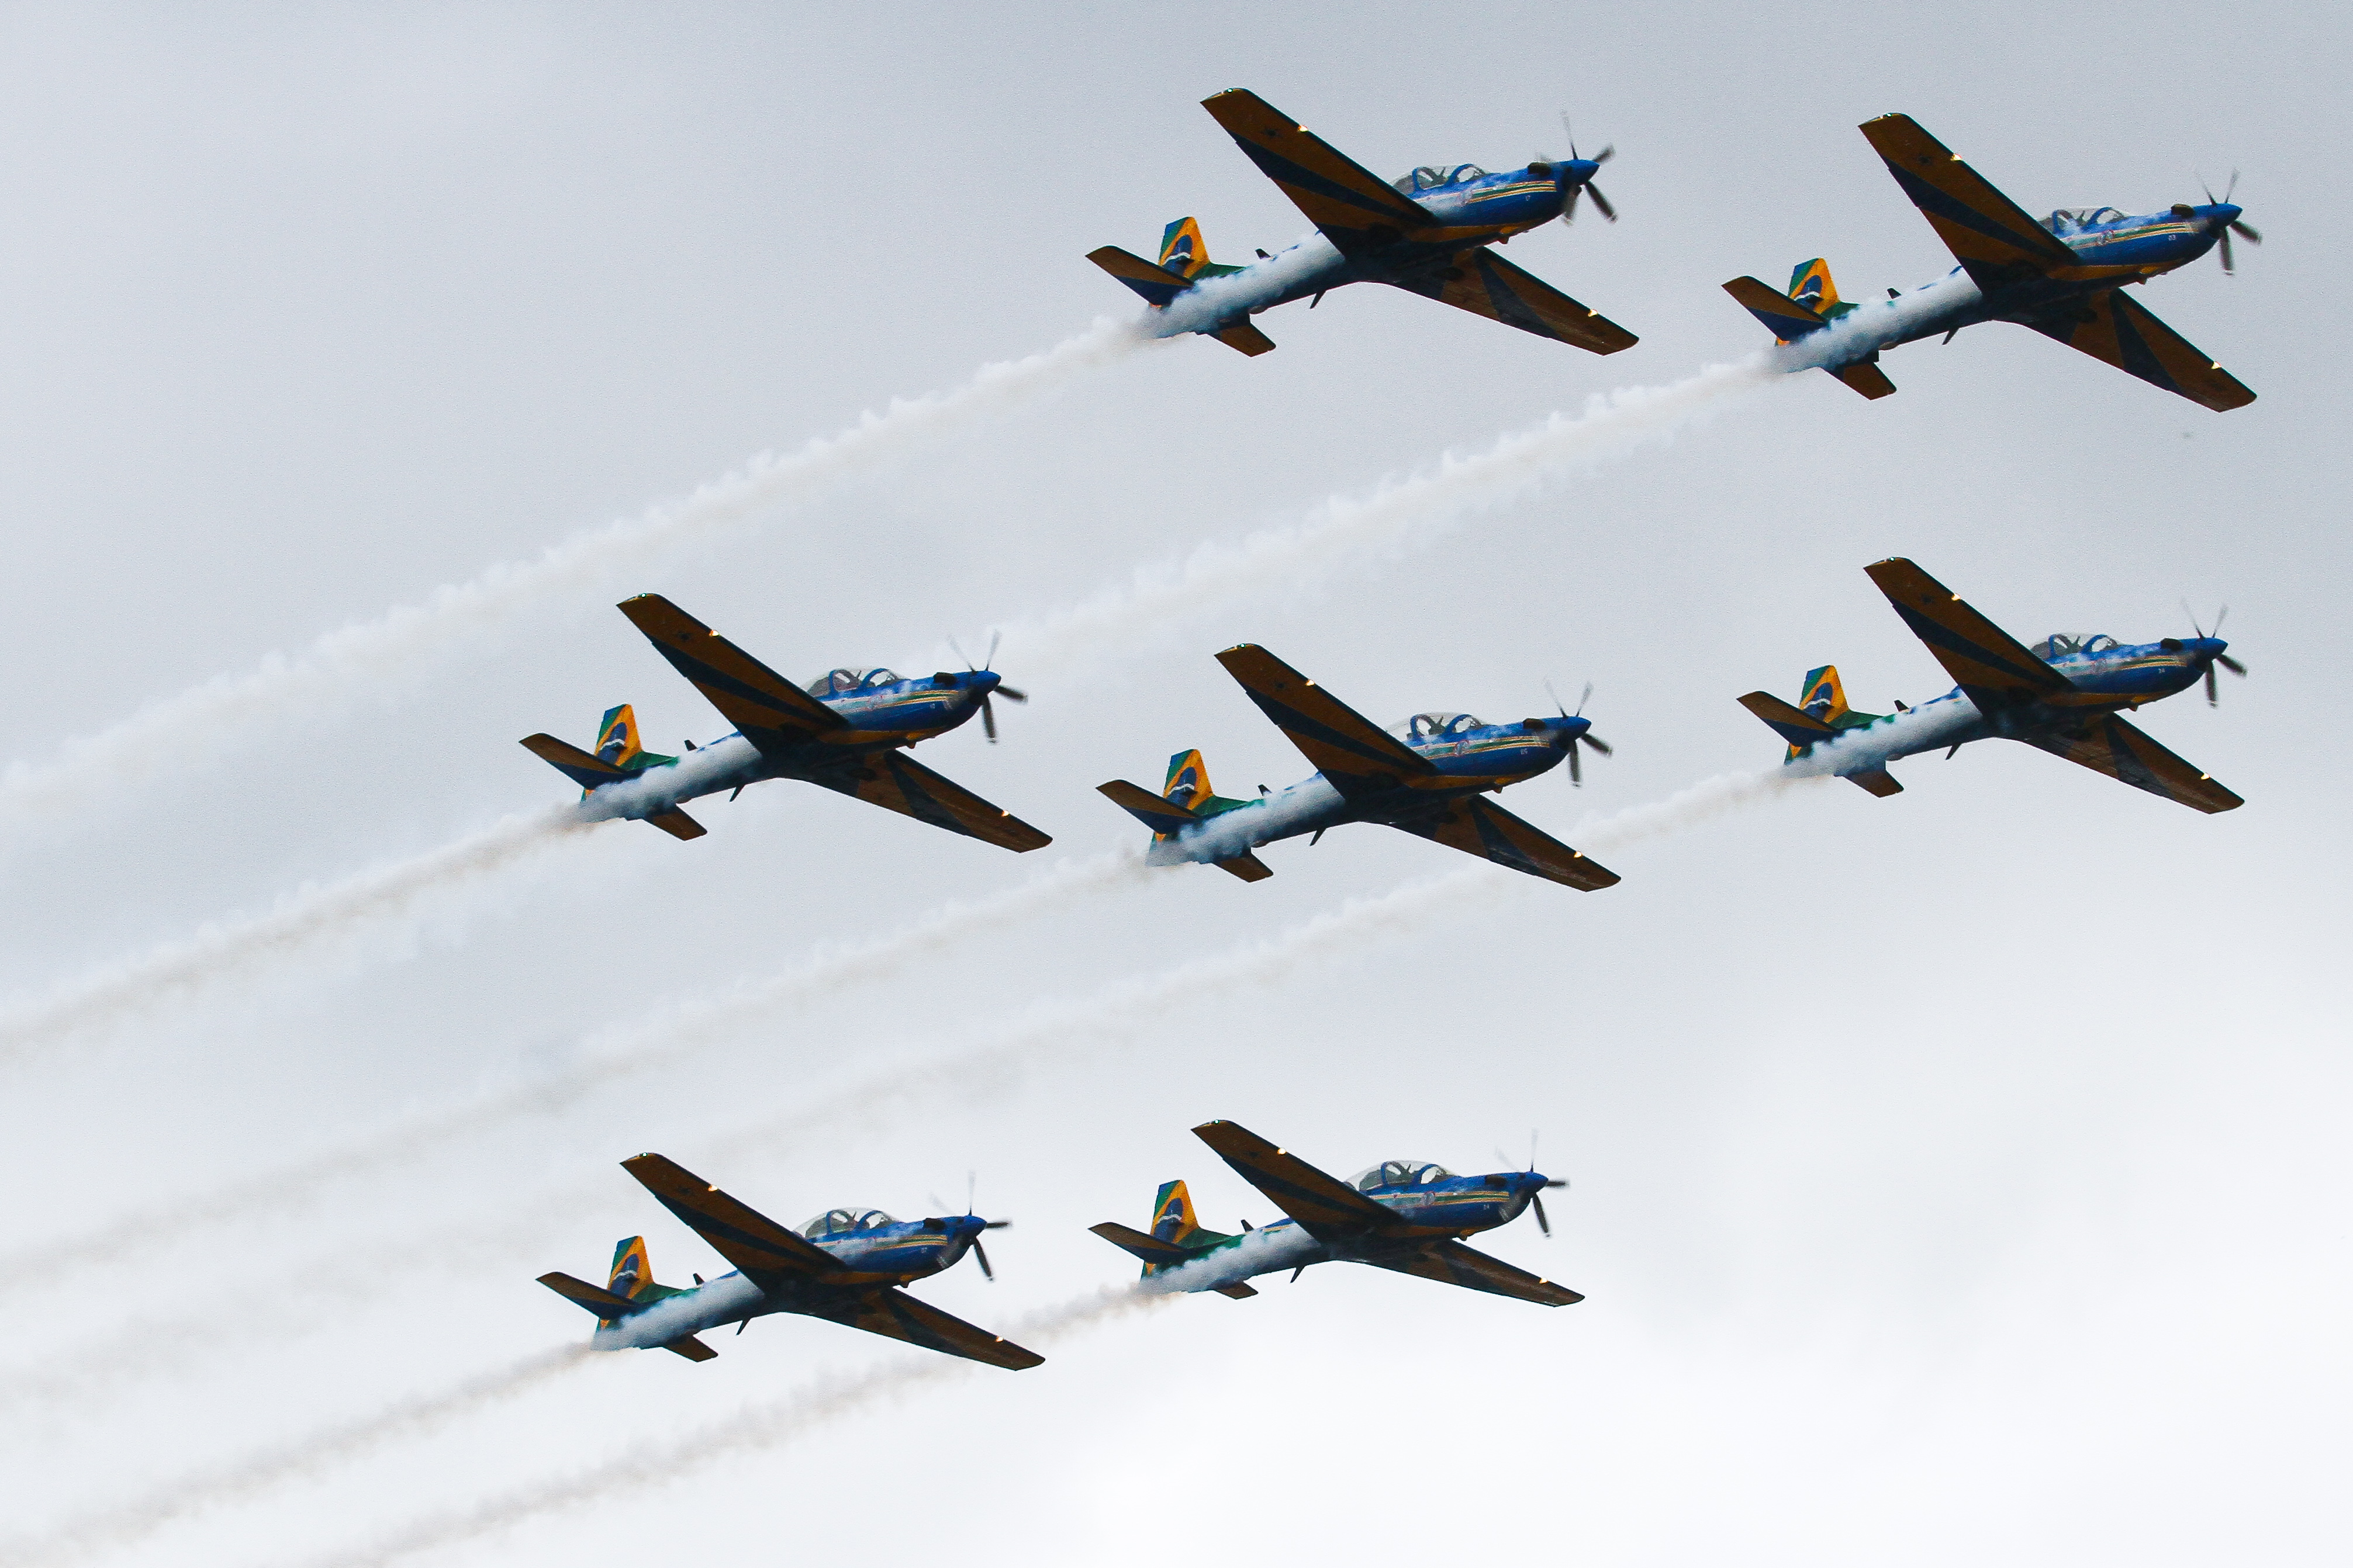 Os avies se apresentaram no cu de Caruaru numa velocidade que variava entre 400 e 450 km (Sandy James/DP Foto)